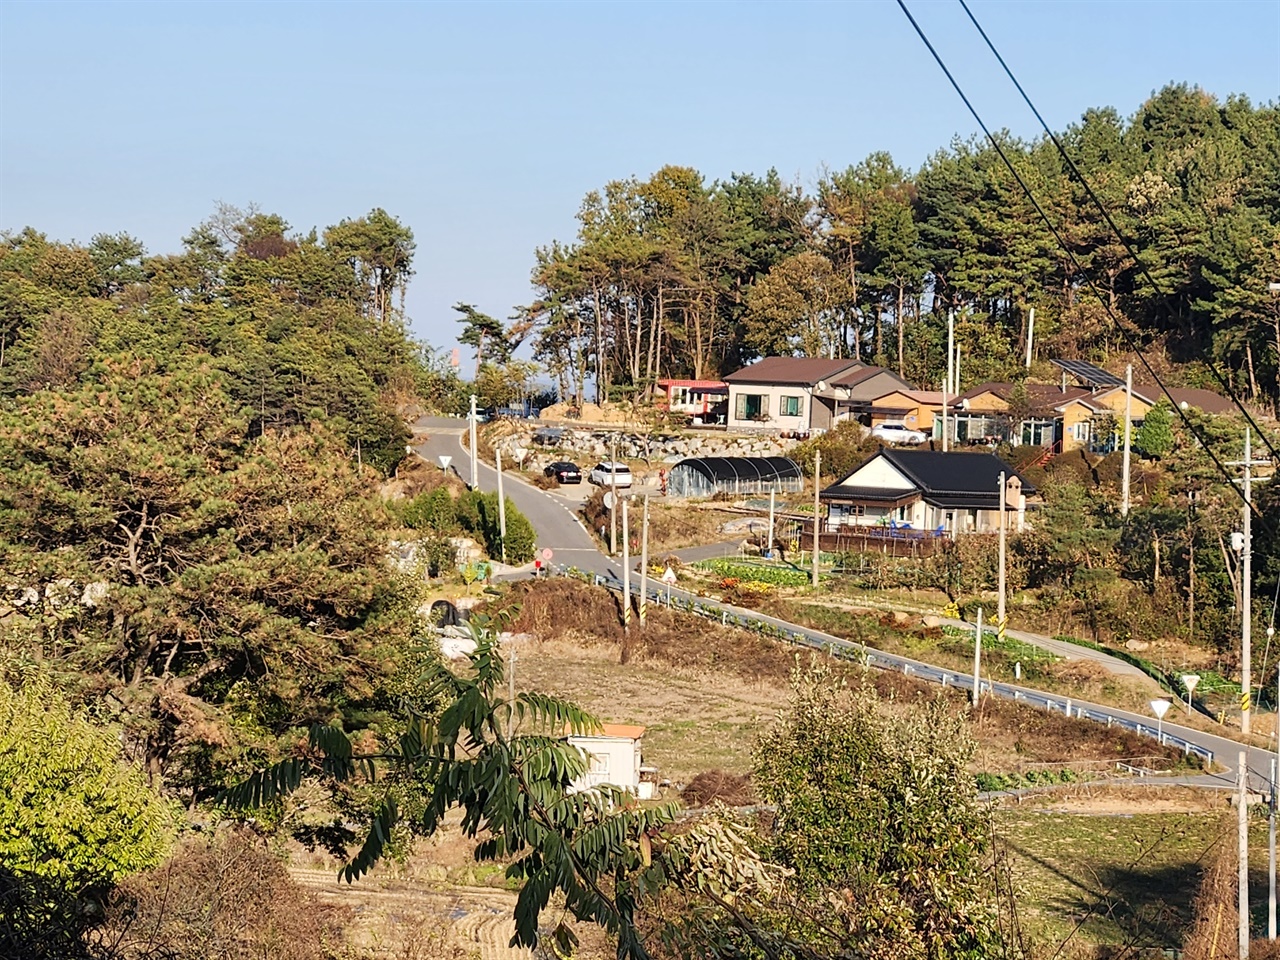 기자는 지난 14일 충남 예산군 신암면 예림리를 찾았다. 마을 한쪽에는 서울과 경기, 대전 등에서 귀촌한 7가구가 모여 살고 있다. 